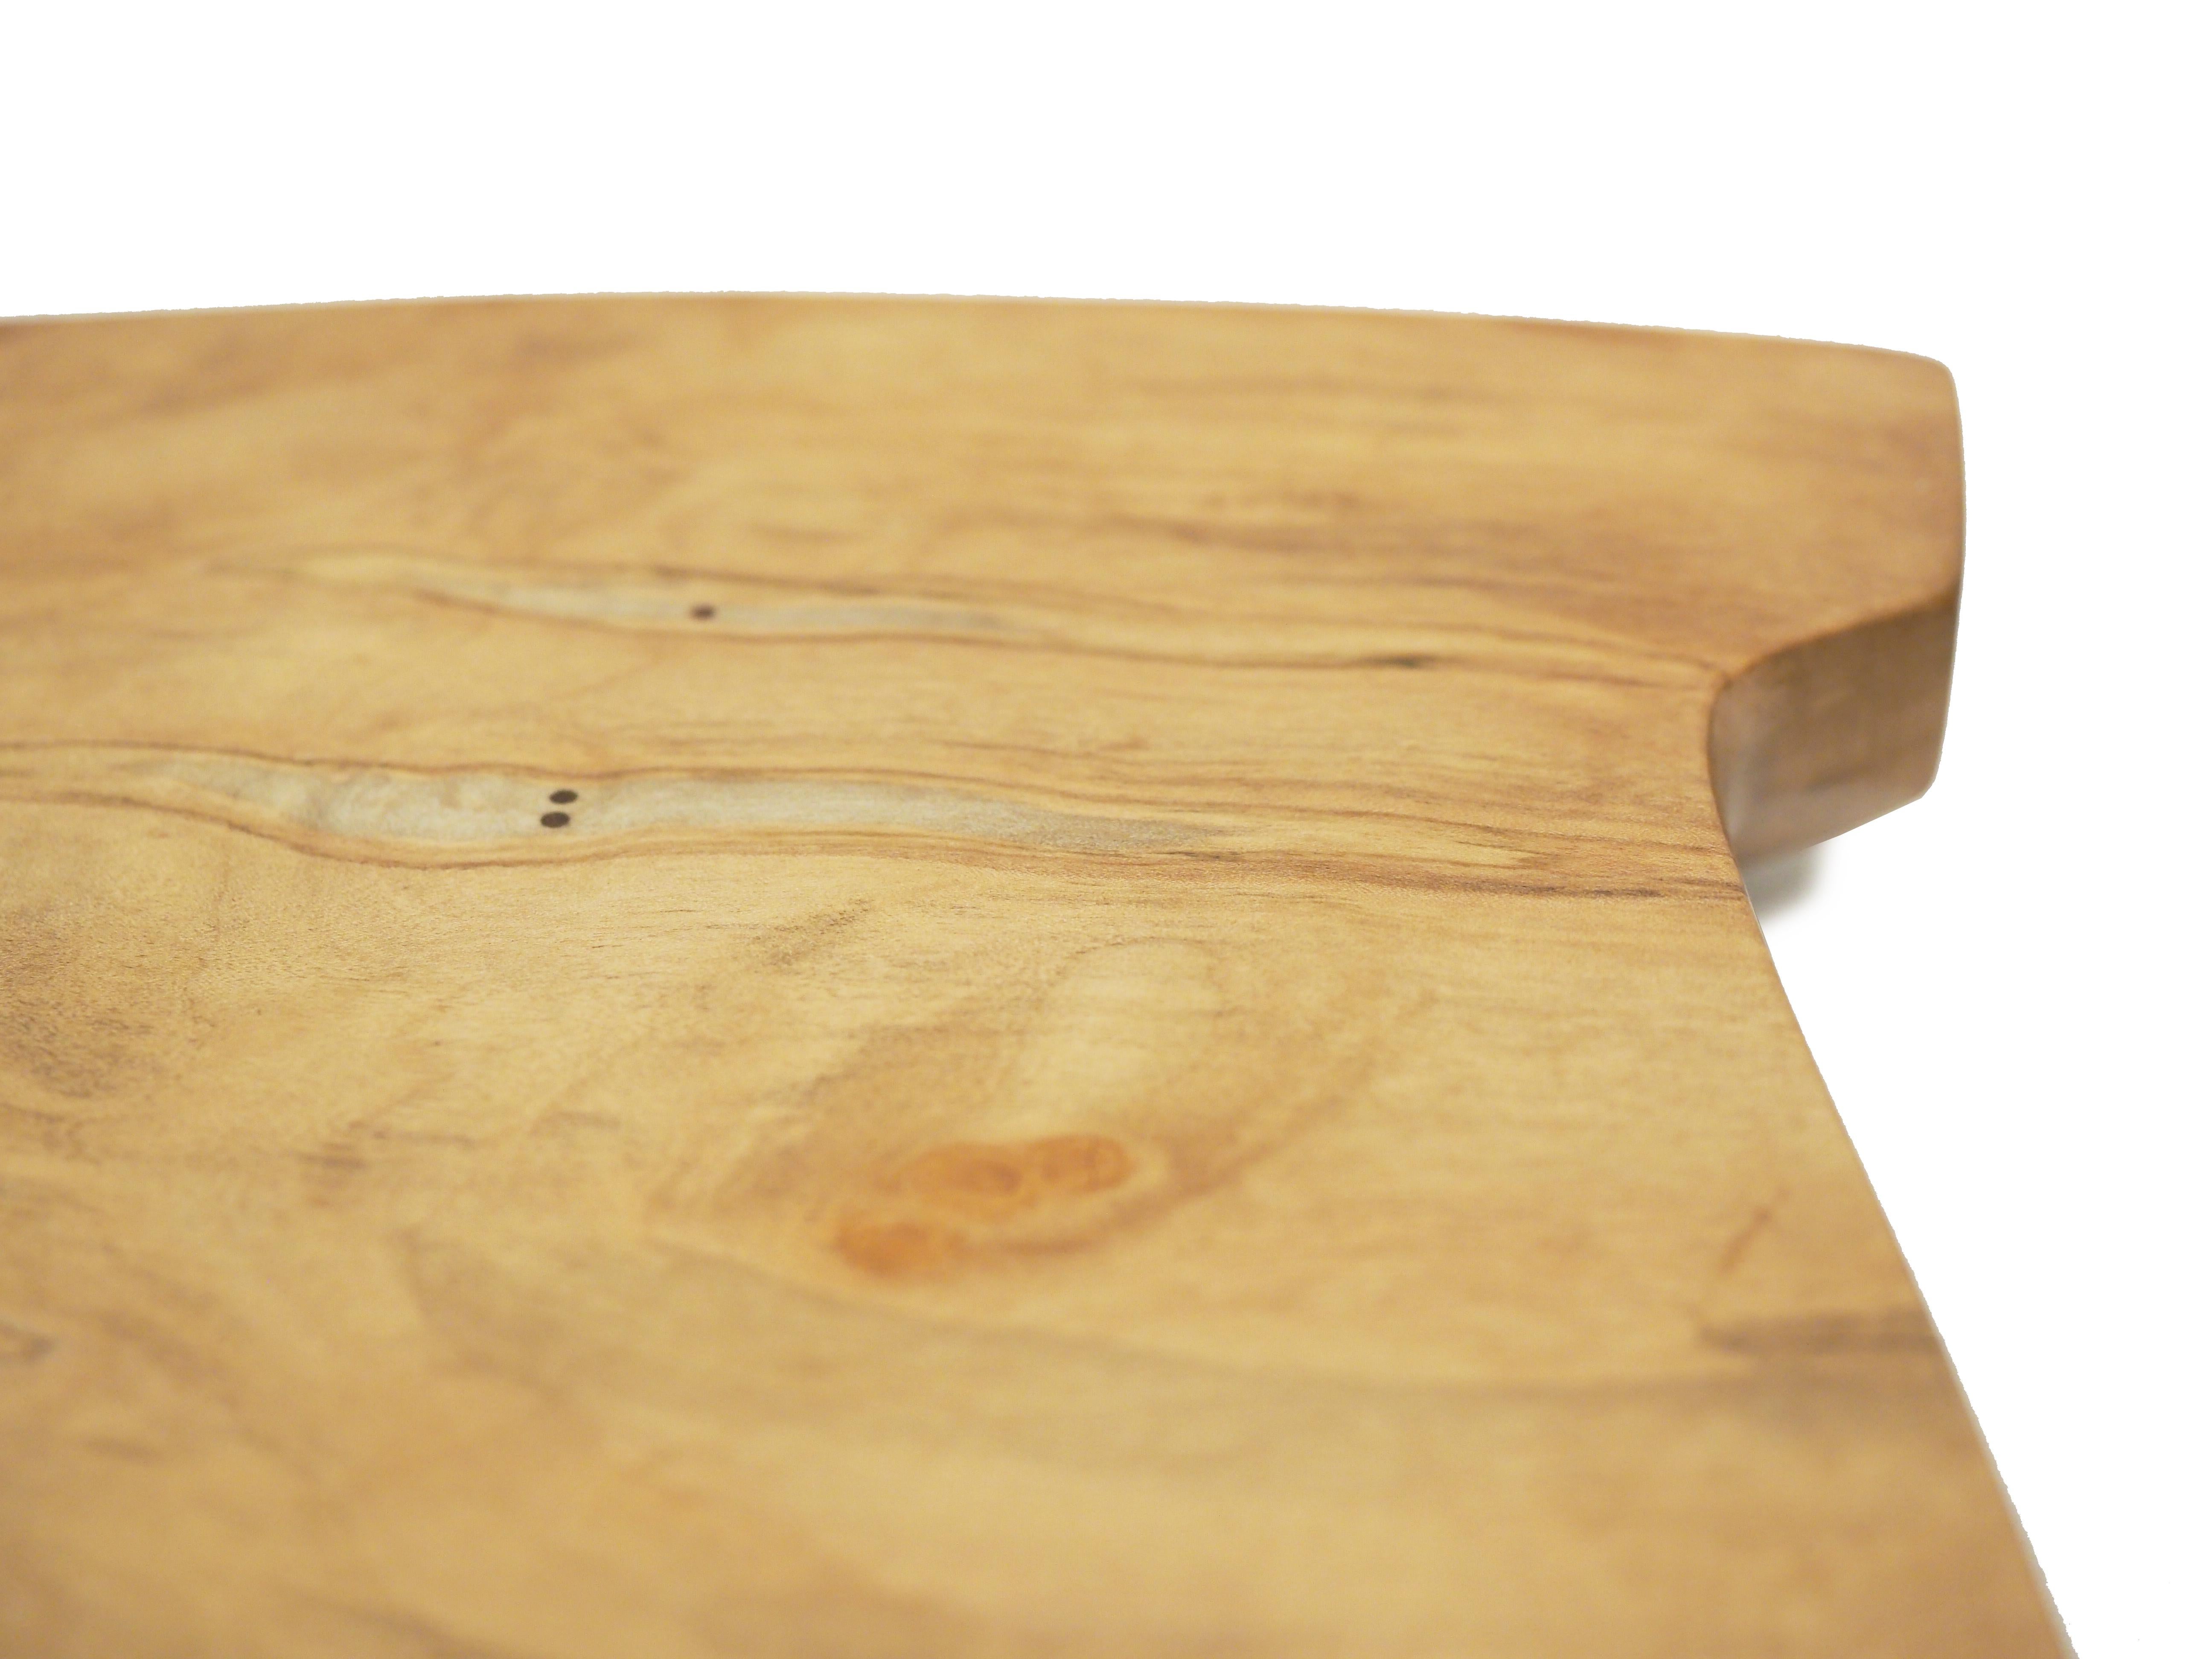 Cutting Board, réalisée par l'artiste Brad Sells de Nashville, est une magnifique sculpture en bois d'érable. Cette pièce ferait un excellent ajout à n'importe quelle maison !